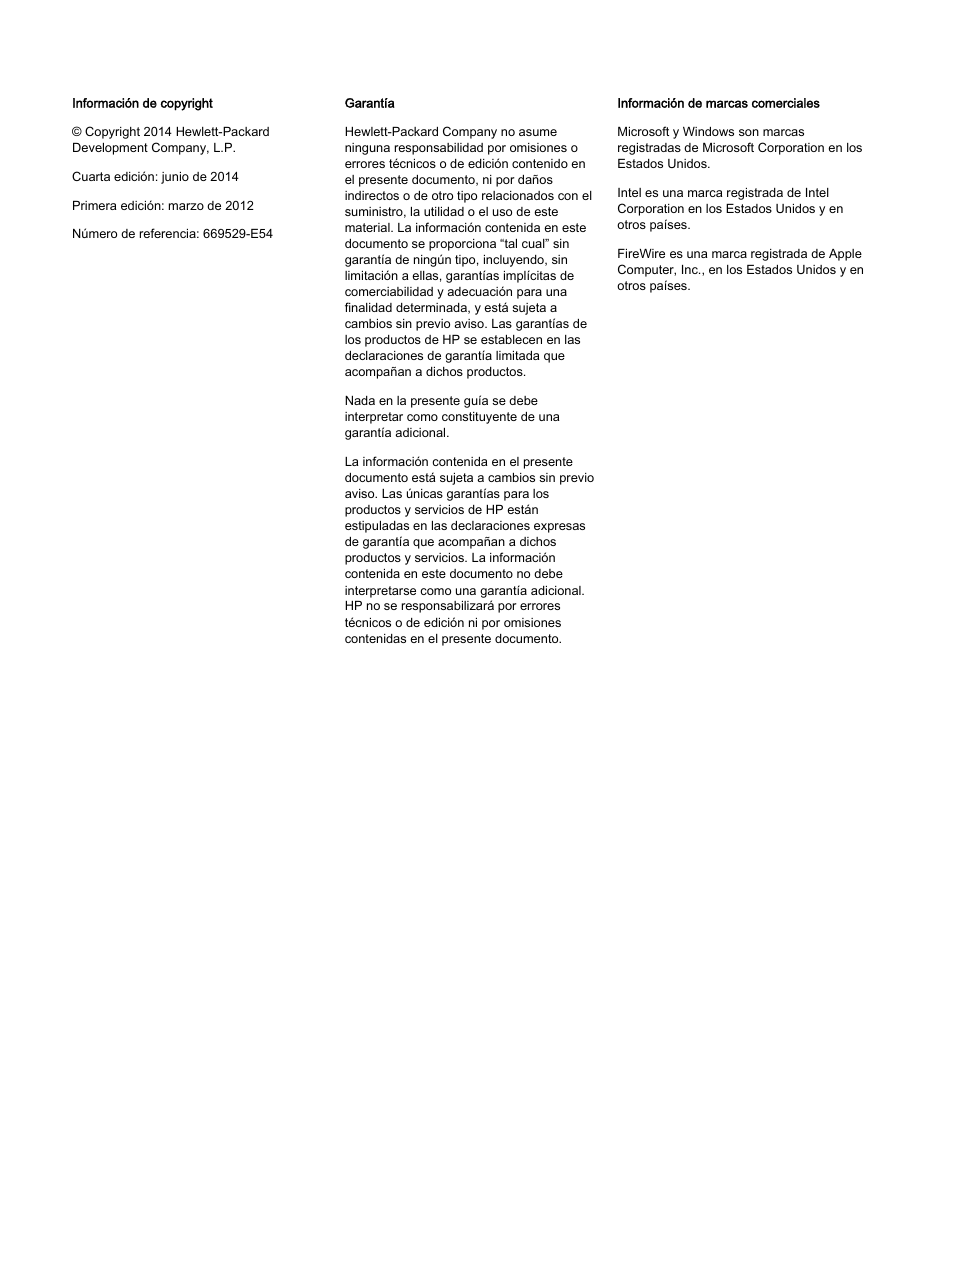 HP Estación de trabajo HP Z820 Manual del usuario | Página 2 / 61